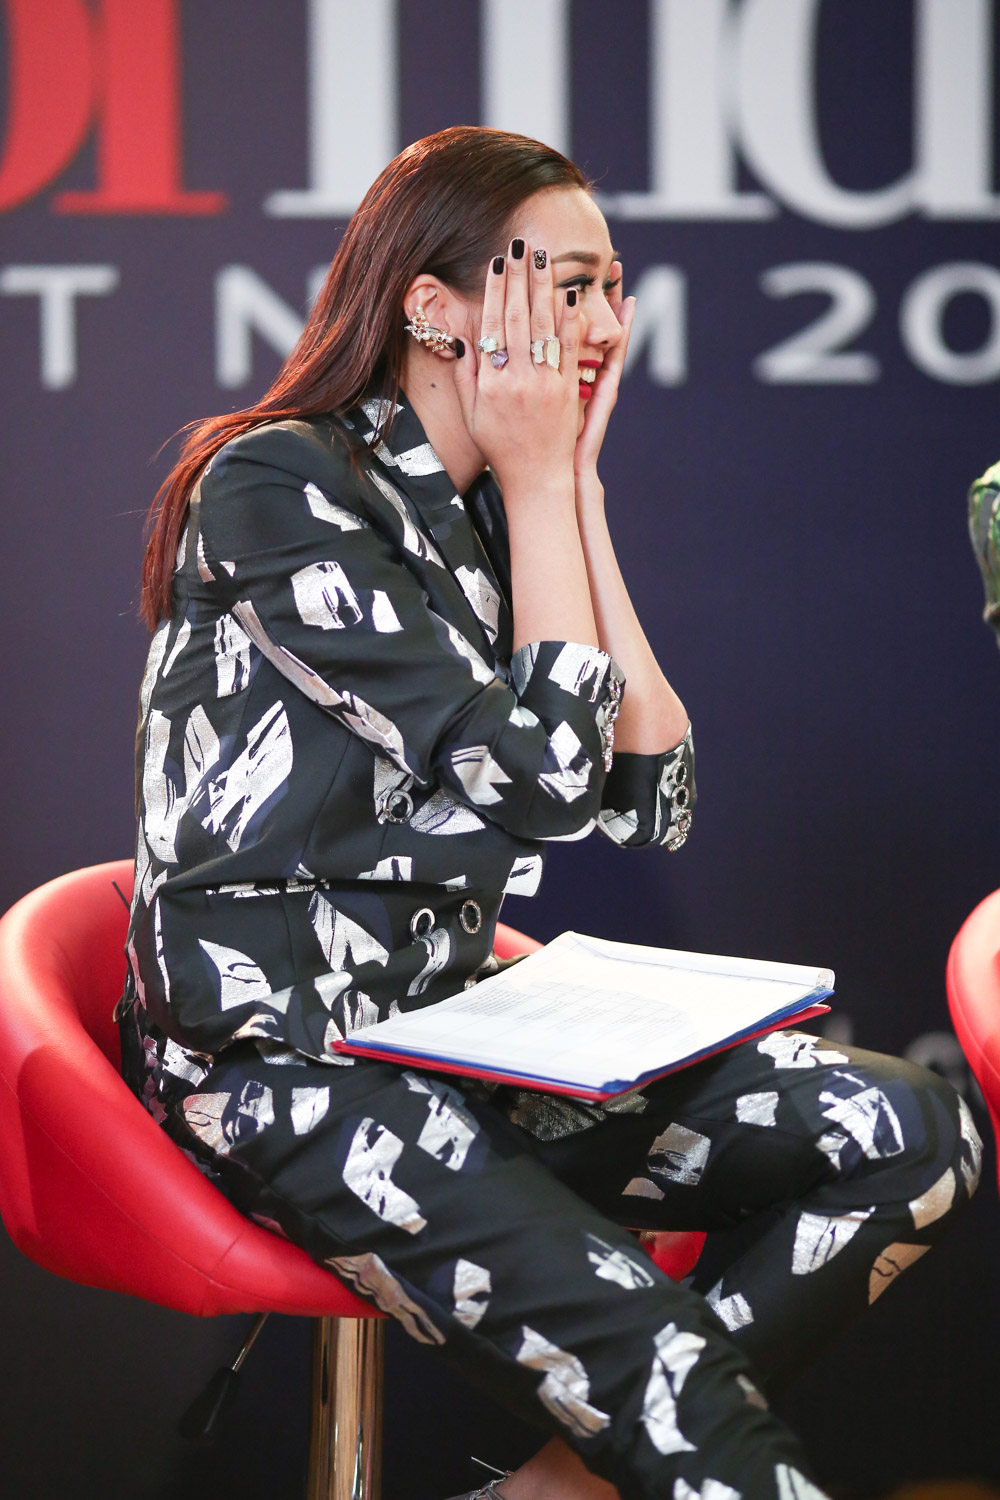 Đủ mọi biểu cảm đáng yêu của giám khảo Thanh Hằng trên “ghế nóng” VNNTM 2015 - Ảnh 6